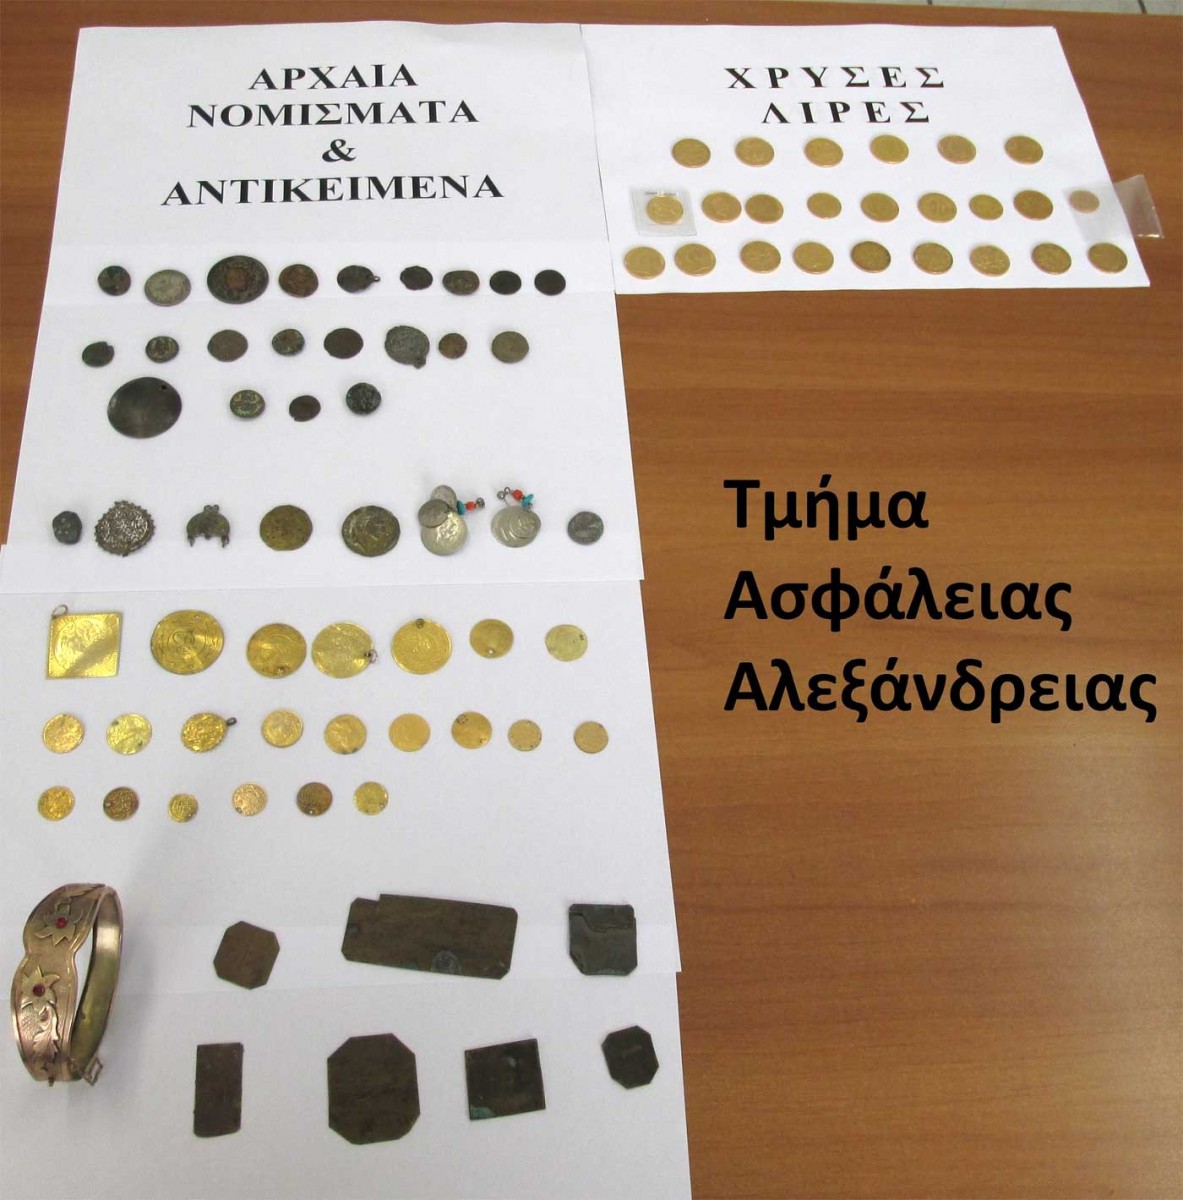 Σημαντικό αριθμό αρχαίων νομισμάτων και άλλων αρχαίων αντικειμένων είχε στην κατοχή του ένας 54χρονος (φωτ. Ελληνική Αστυνομία).